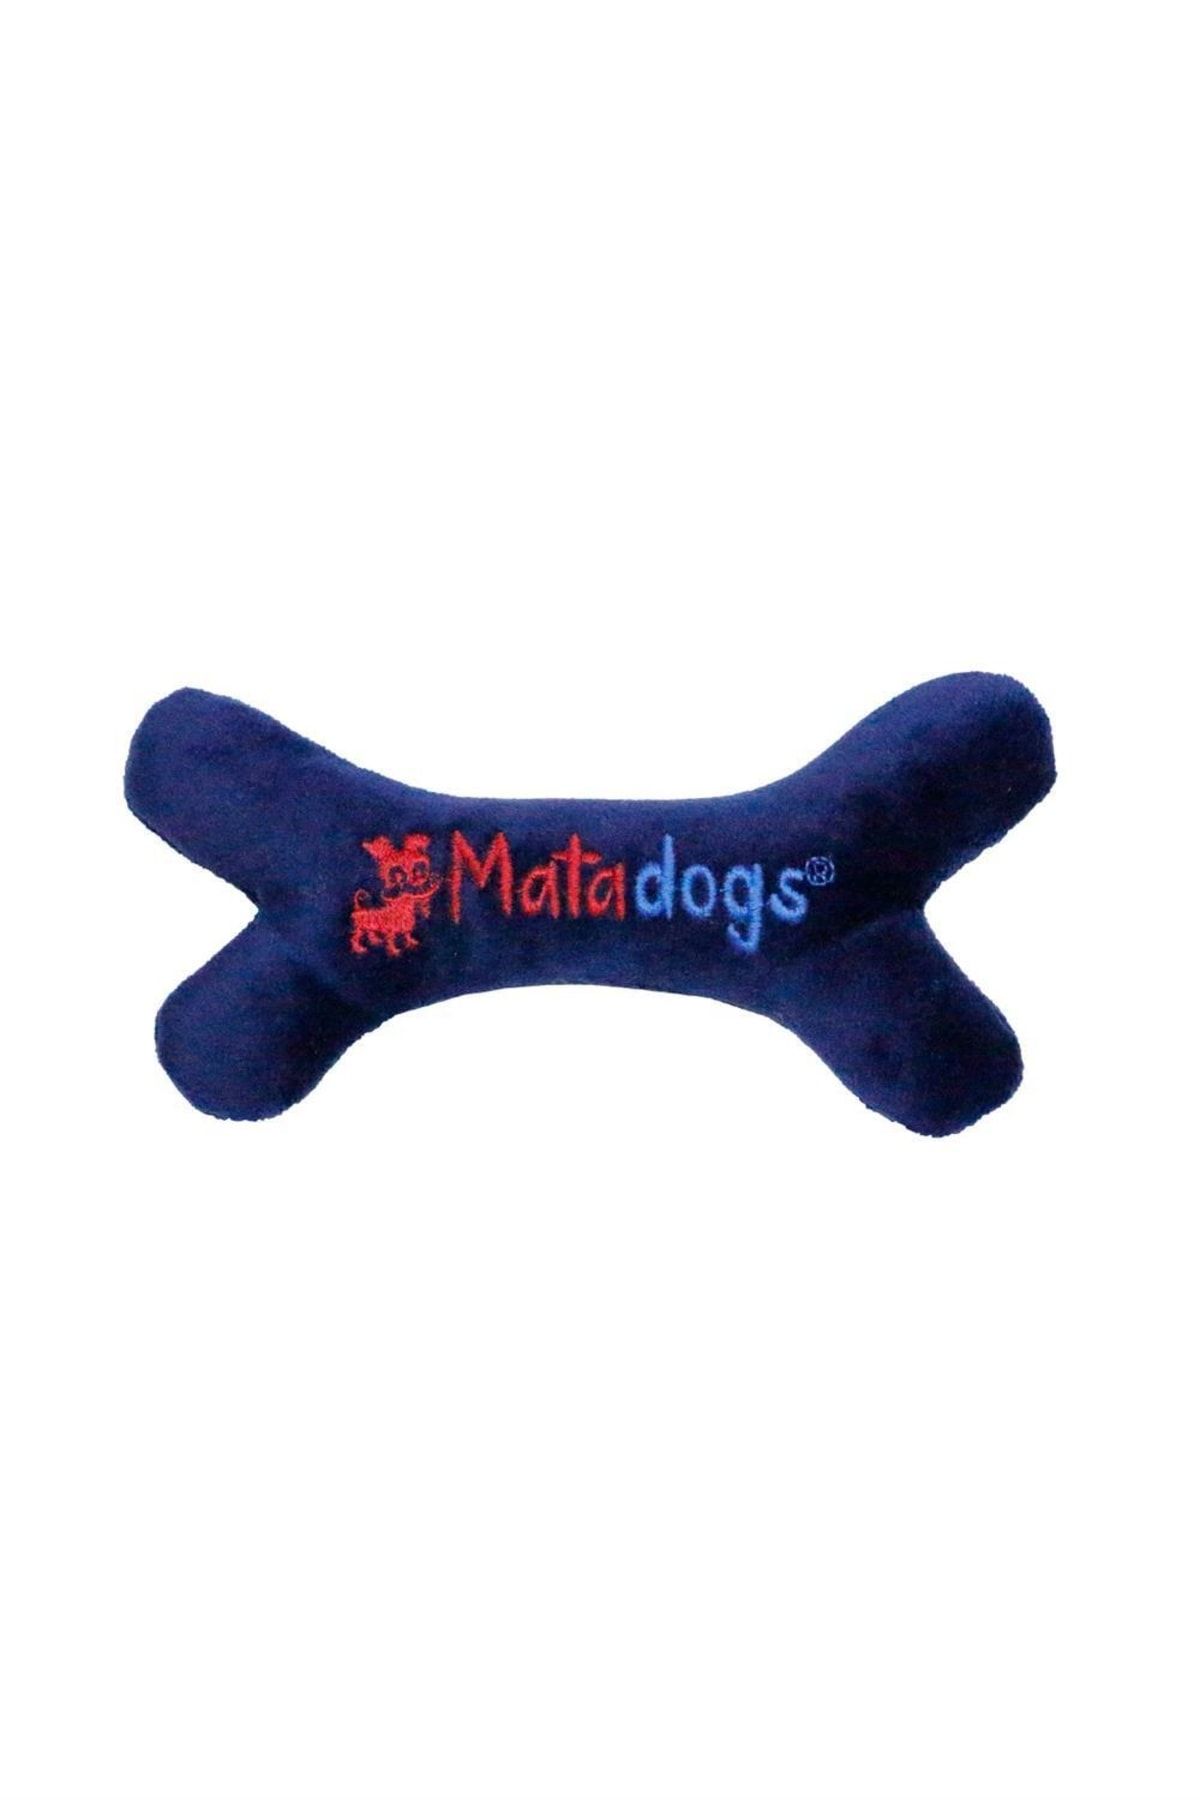 MATATABİ CATS Mata Dogs Mini Bone Sesli, Peluş, Nakışlı Köpek Oyuncağı 18 Cm